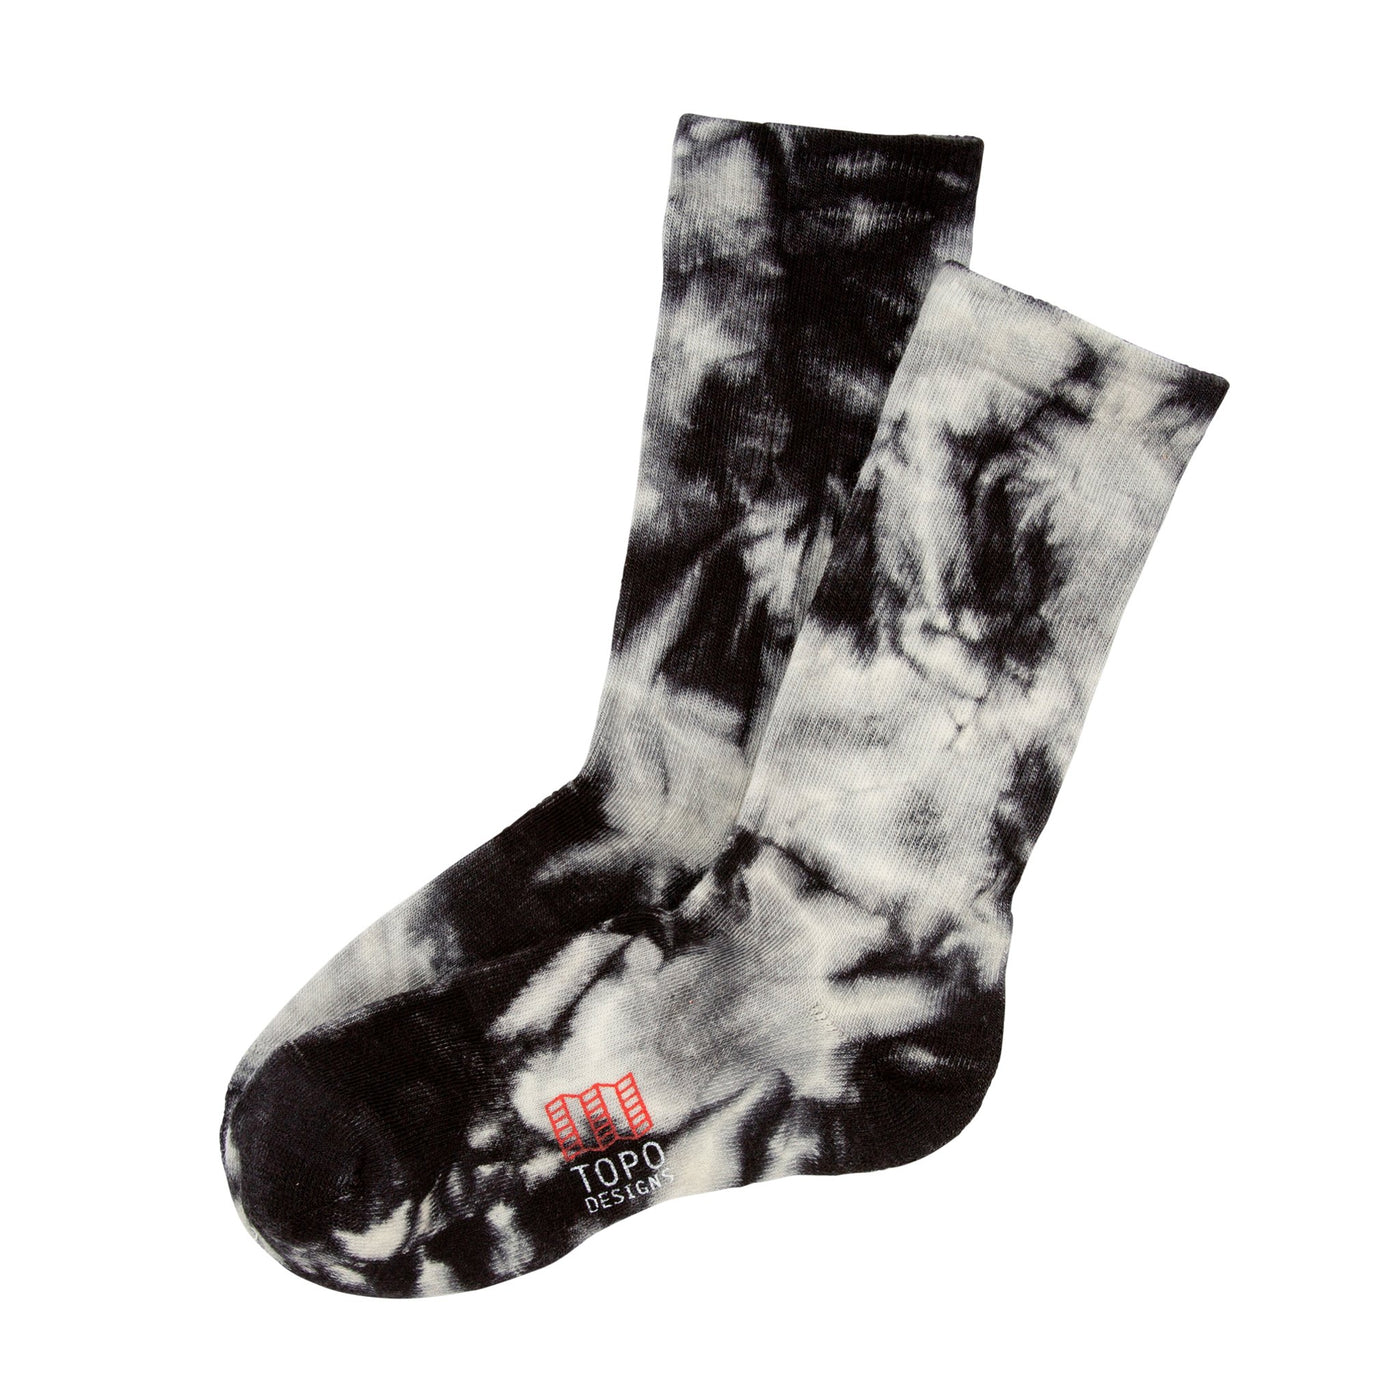 Town Sock - Black/White Tie Dye